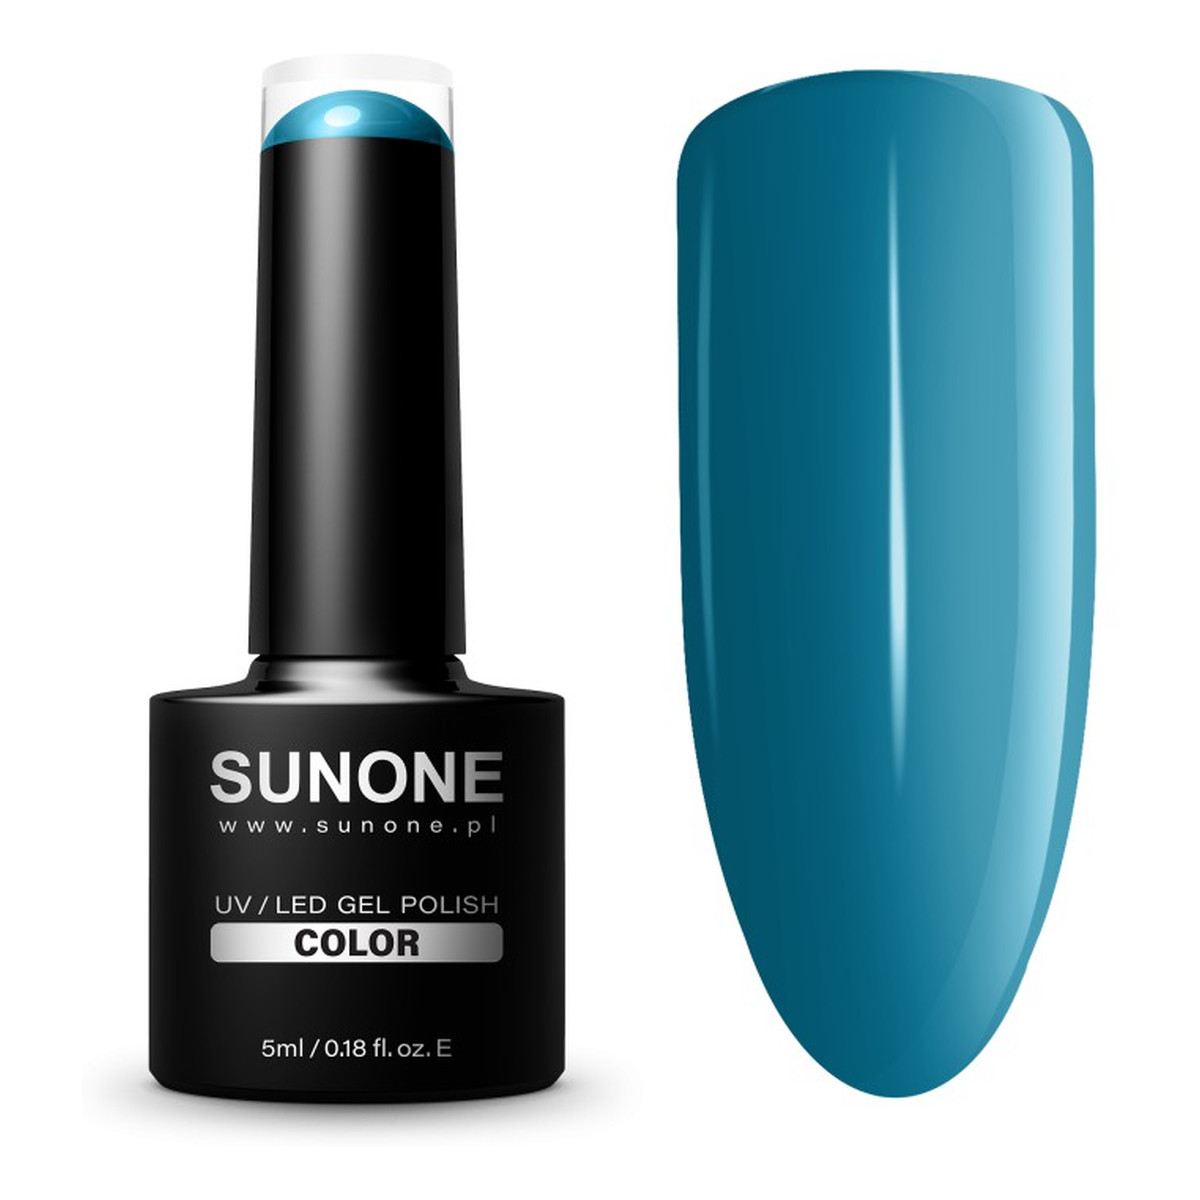 Sunone UV/LED Gel Polish Color lakier hybrydowy 5ml